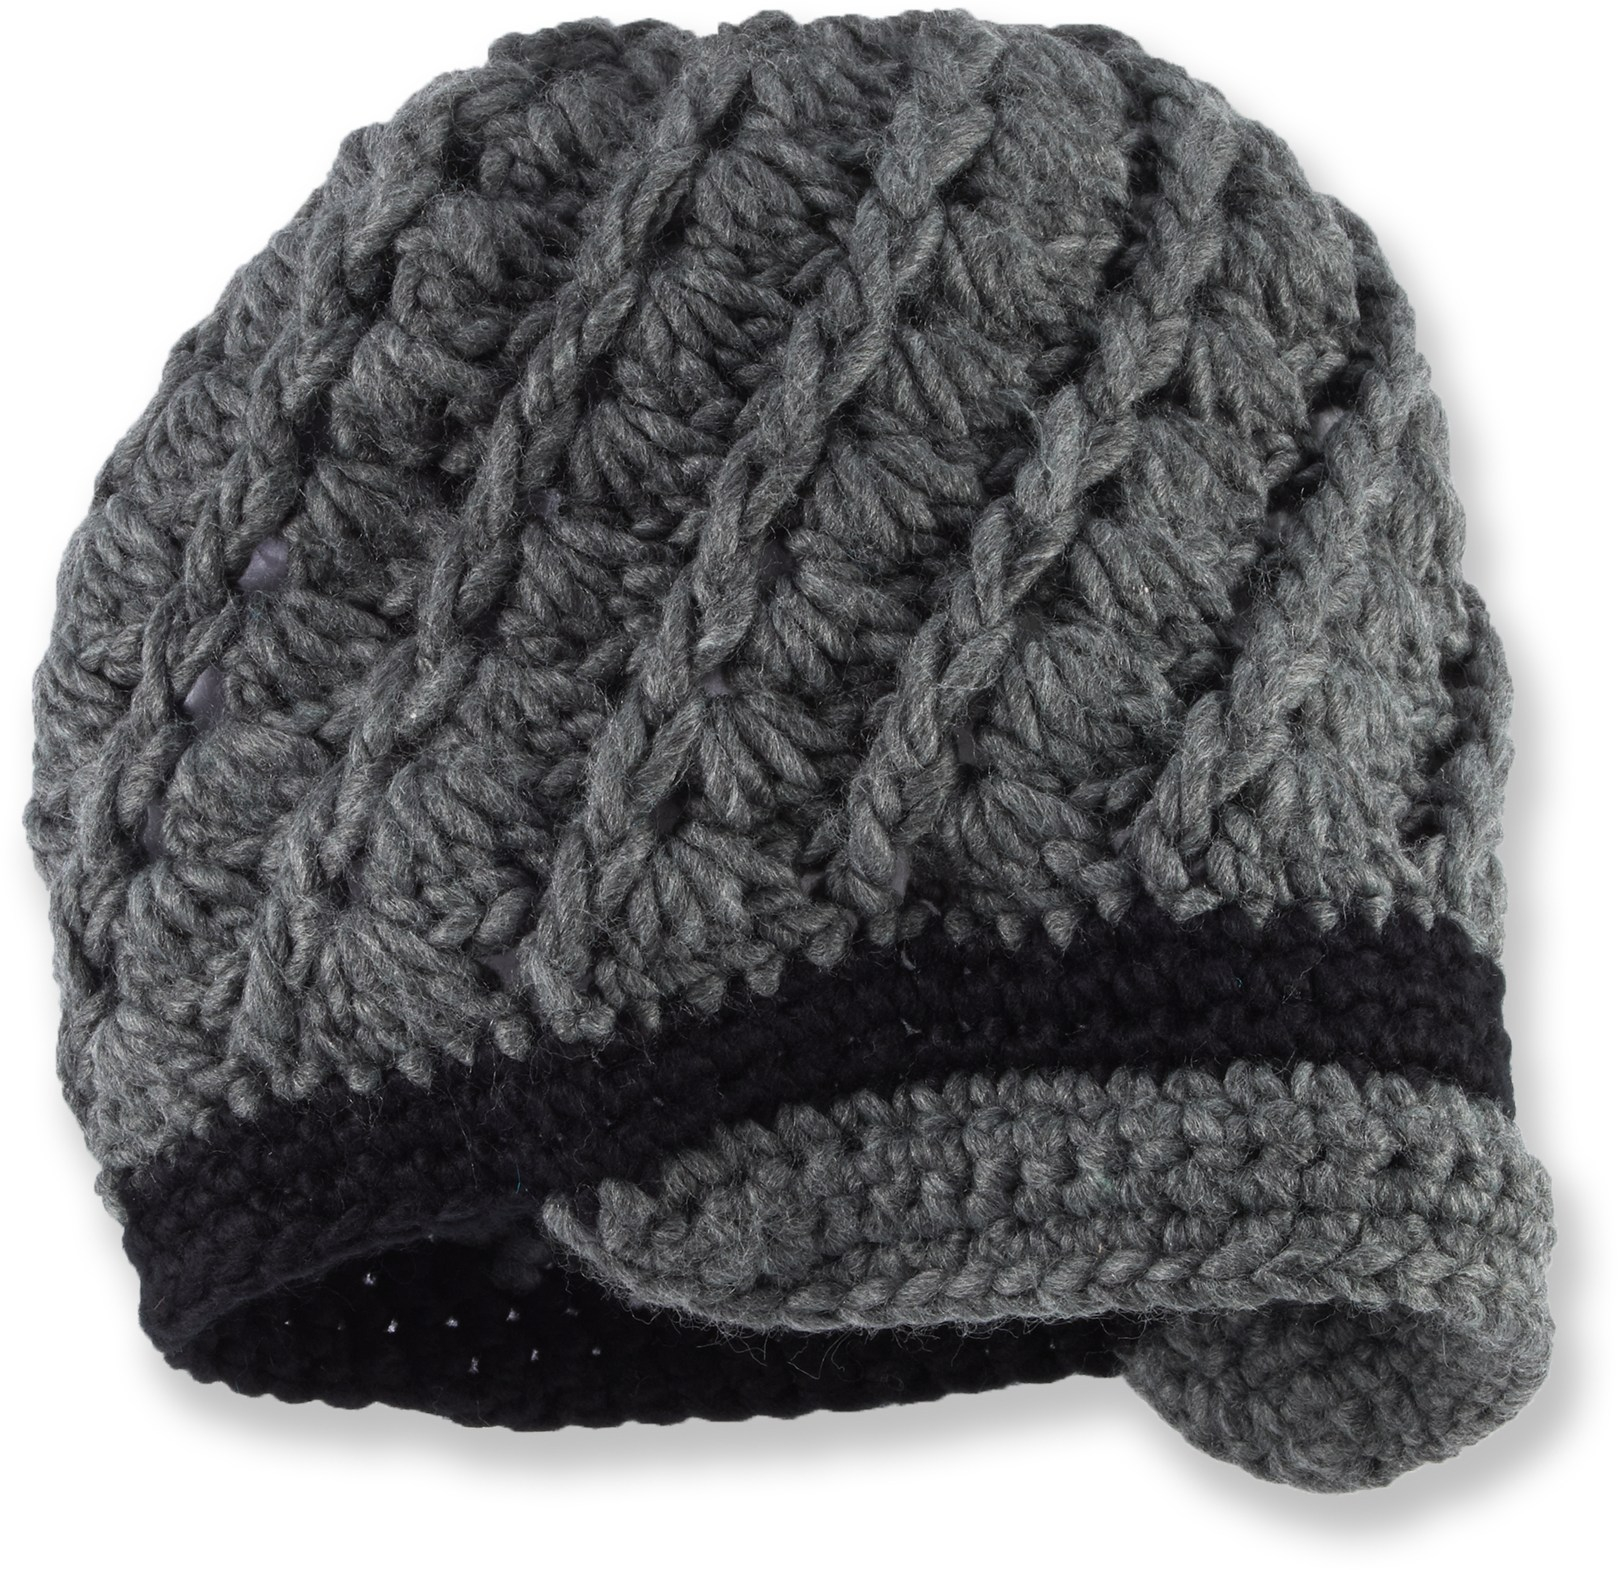 Crochet Slouchy Hat With Brim Pattern Free Pattern Crochet Womens Swirly Brimmed Hat Classy Crochet